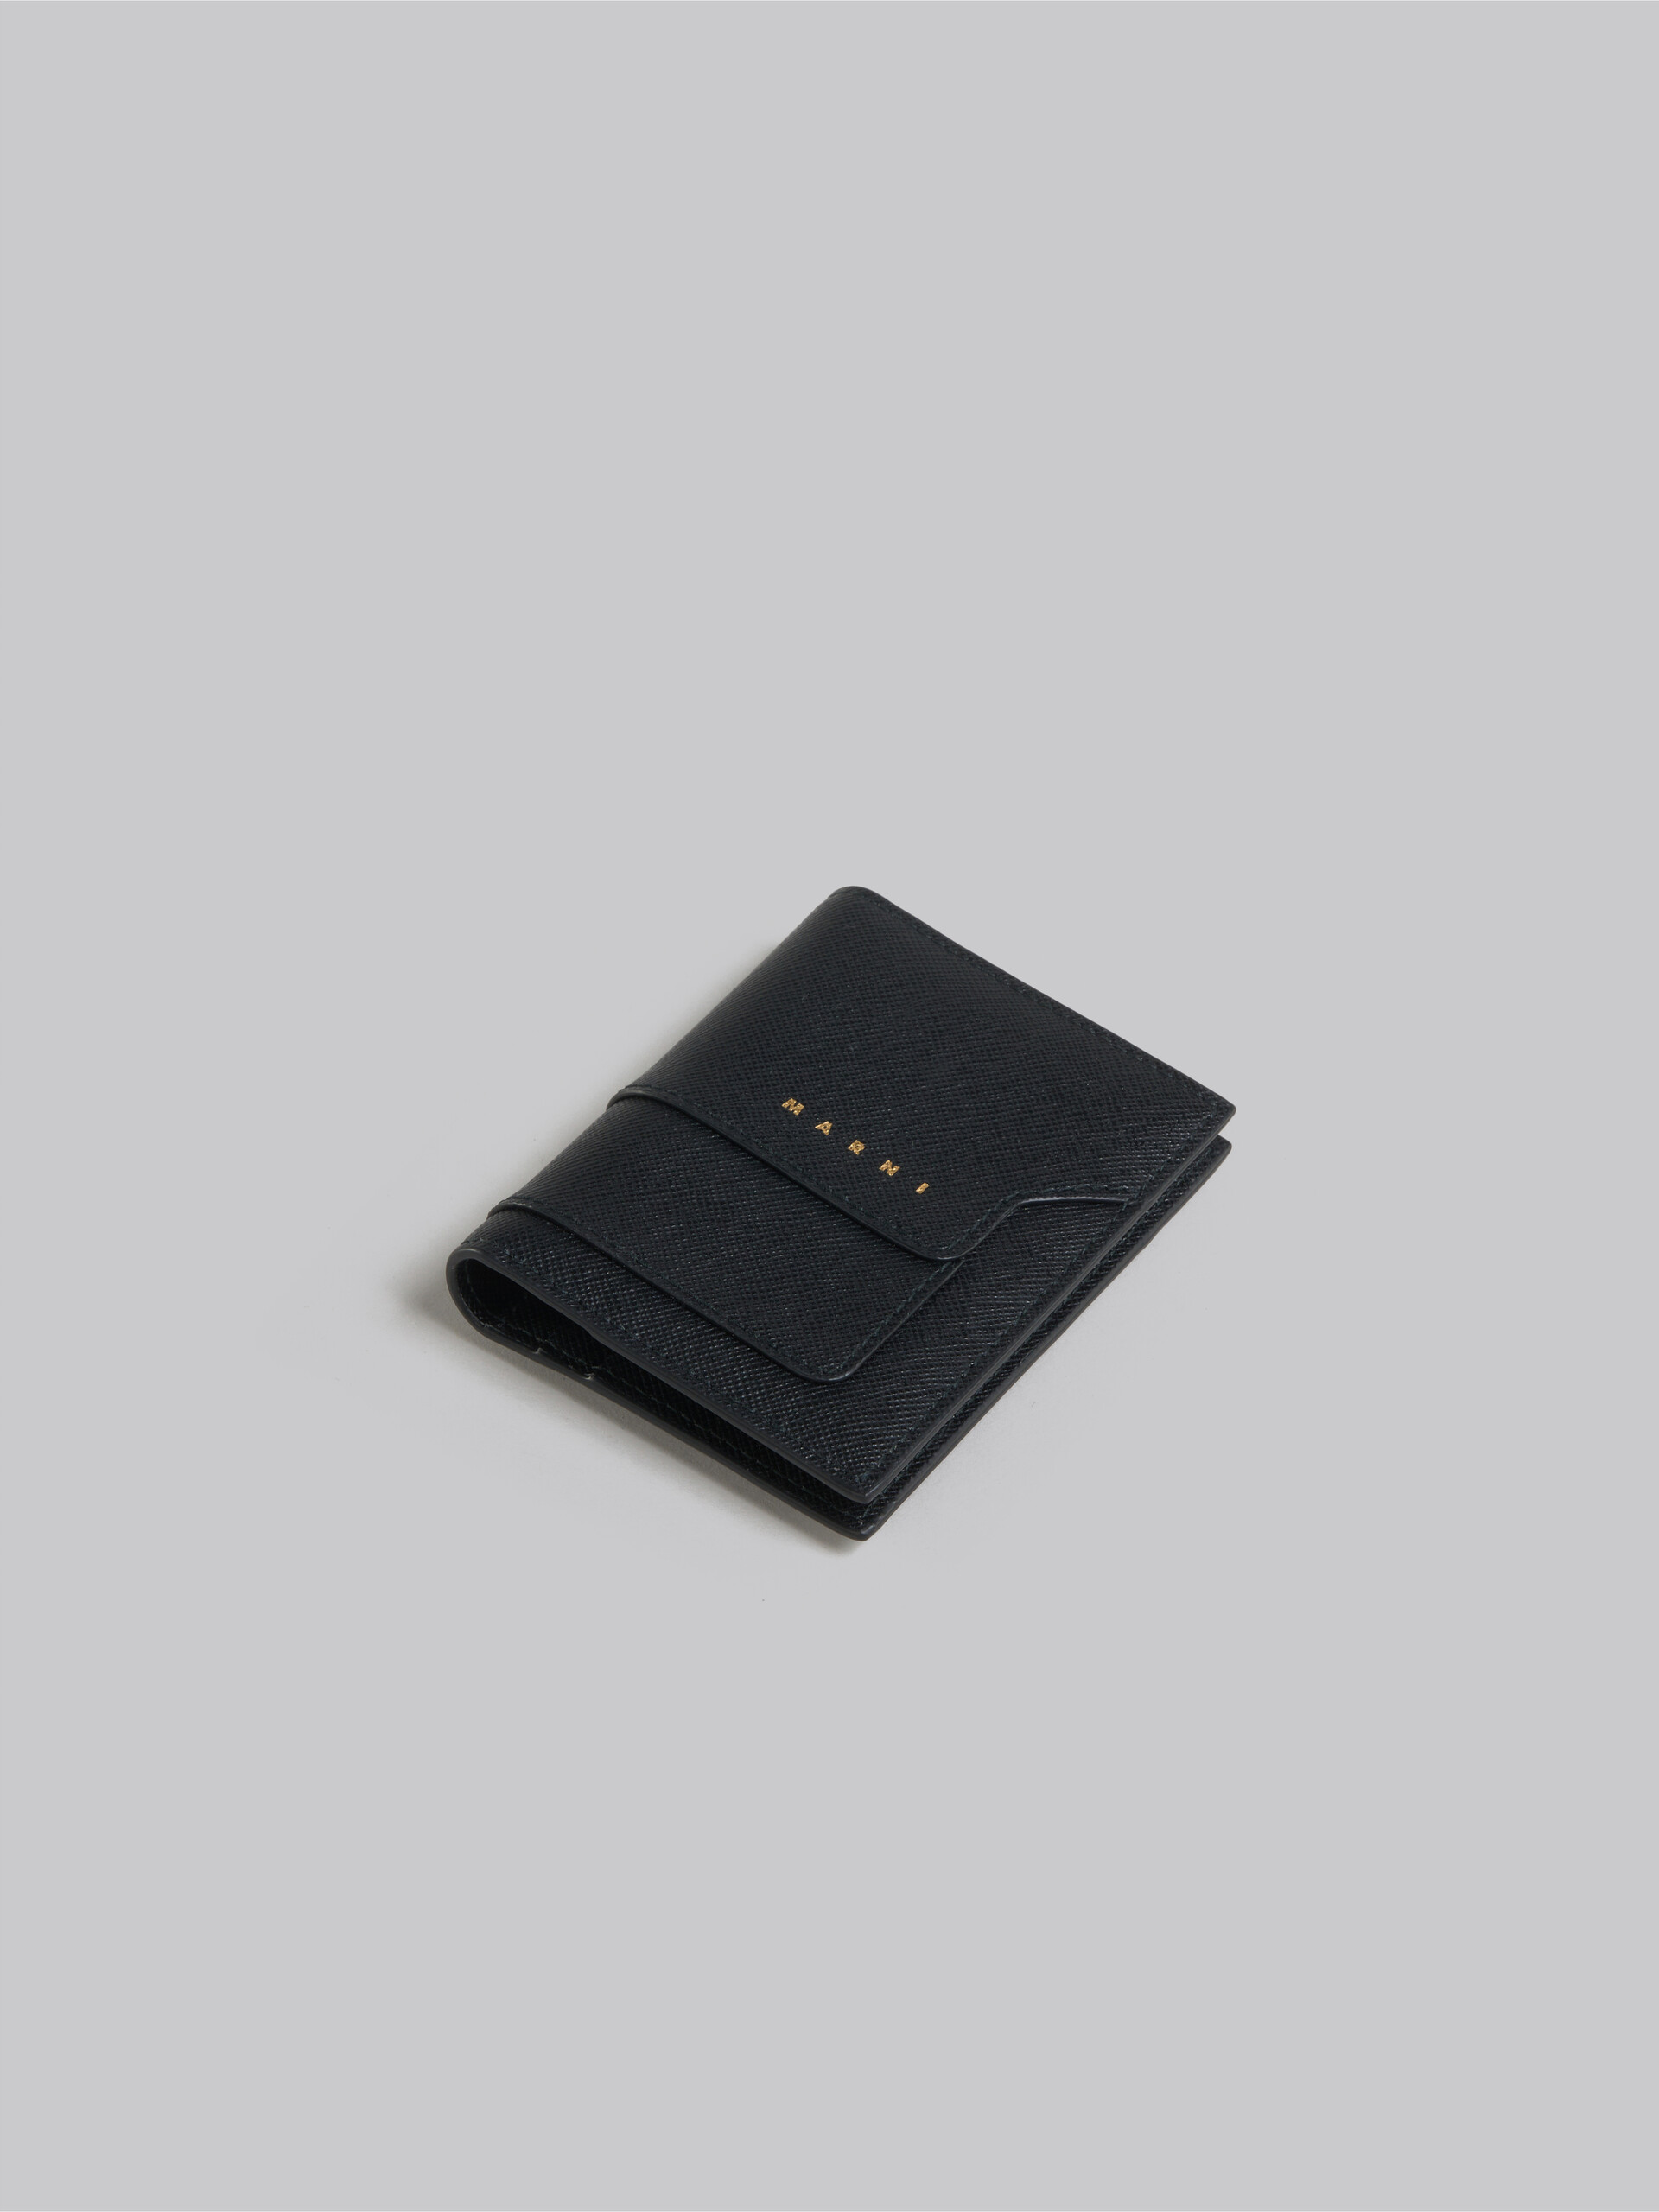 Porte-cartes en cuir saffiano noir - Portefeuilles - Image 4